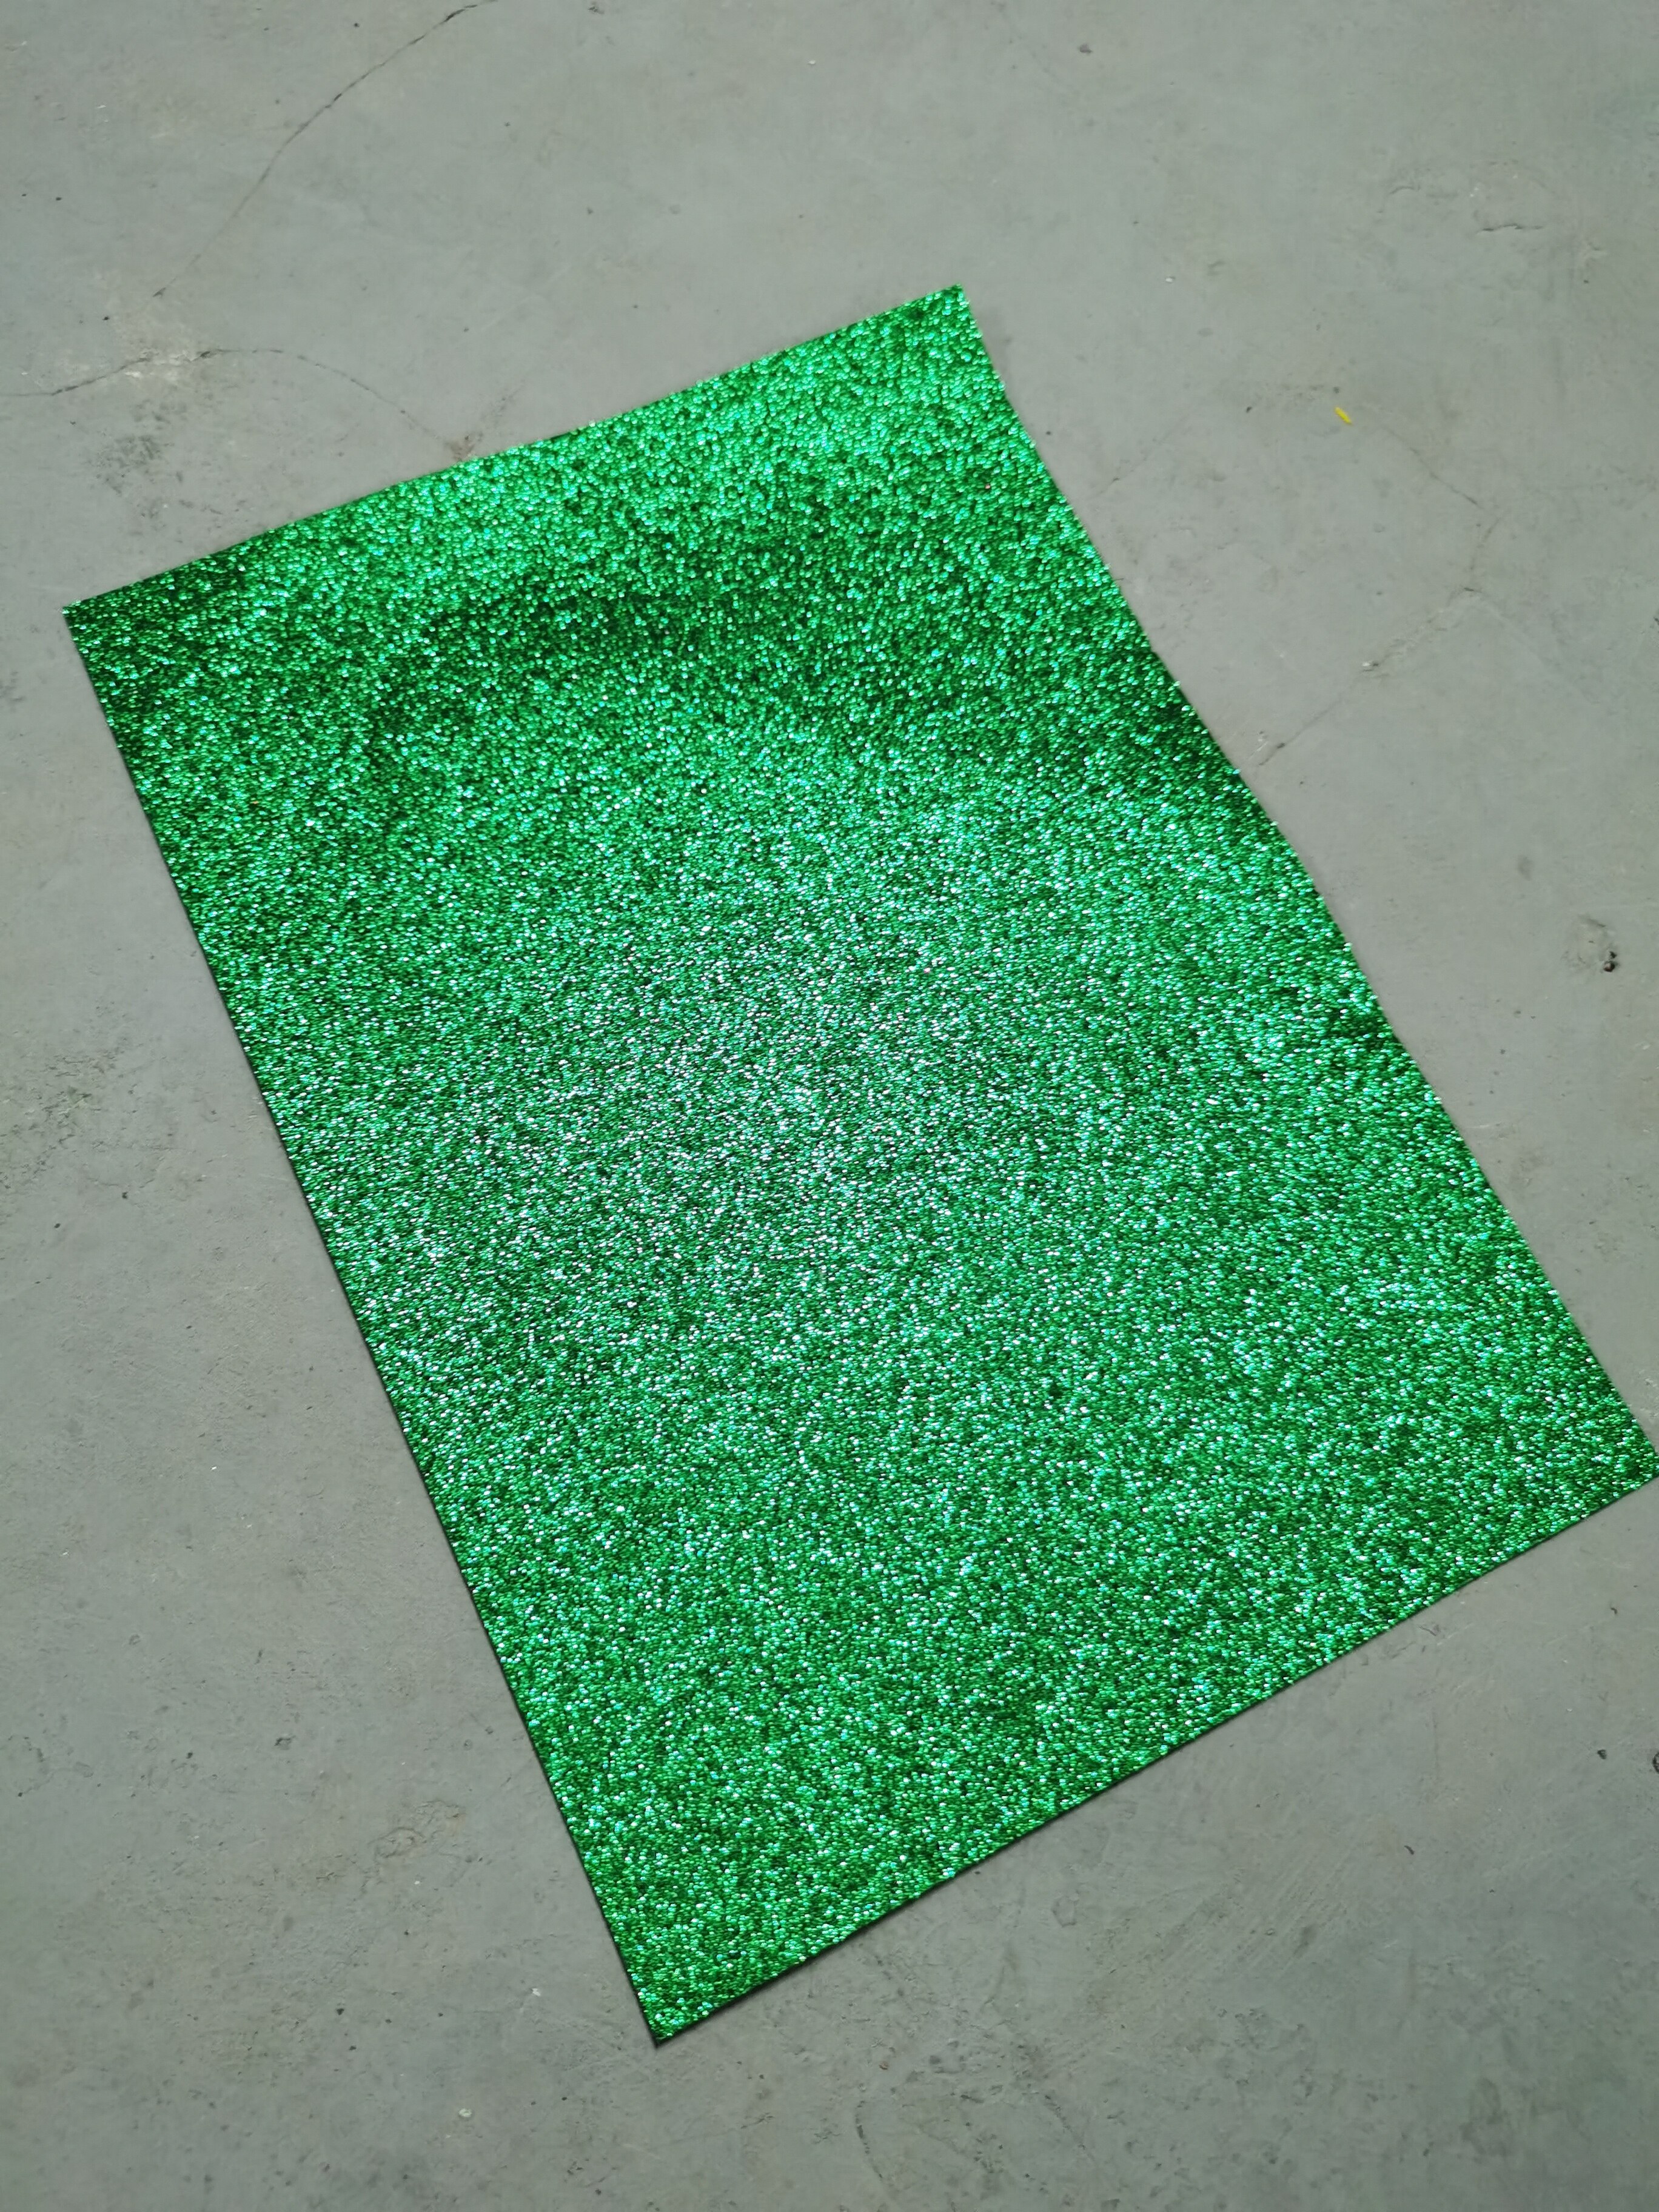 Glitterfilt ikke-vævet 1 stykke superblødt stof 1.2mm tykkelse kludfilt diy bundt til syning af dukker håndværk gratis skib: Grøn